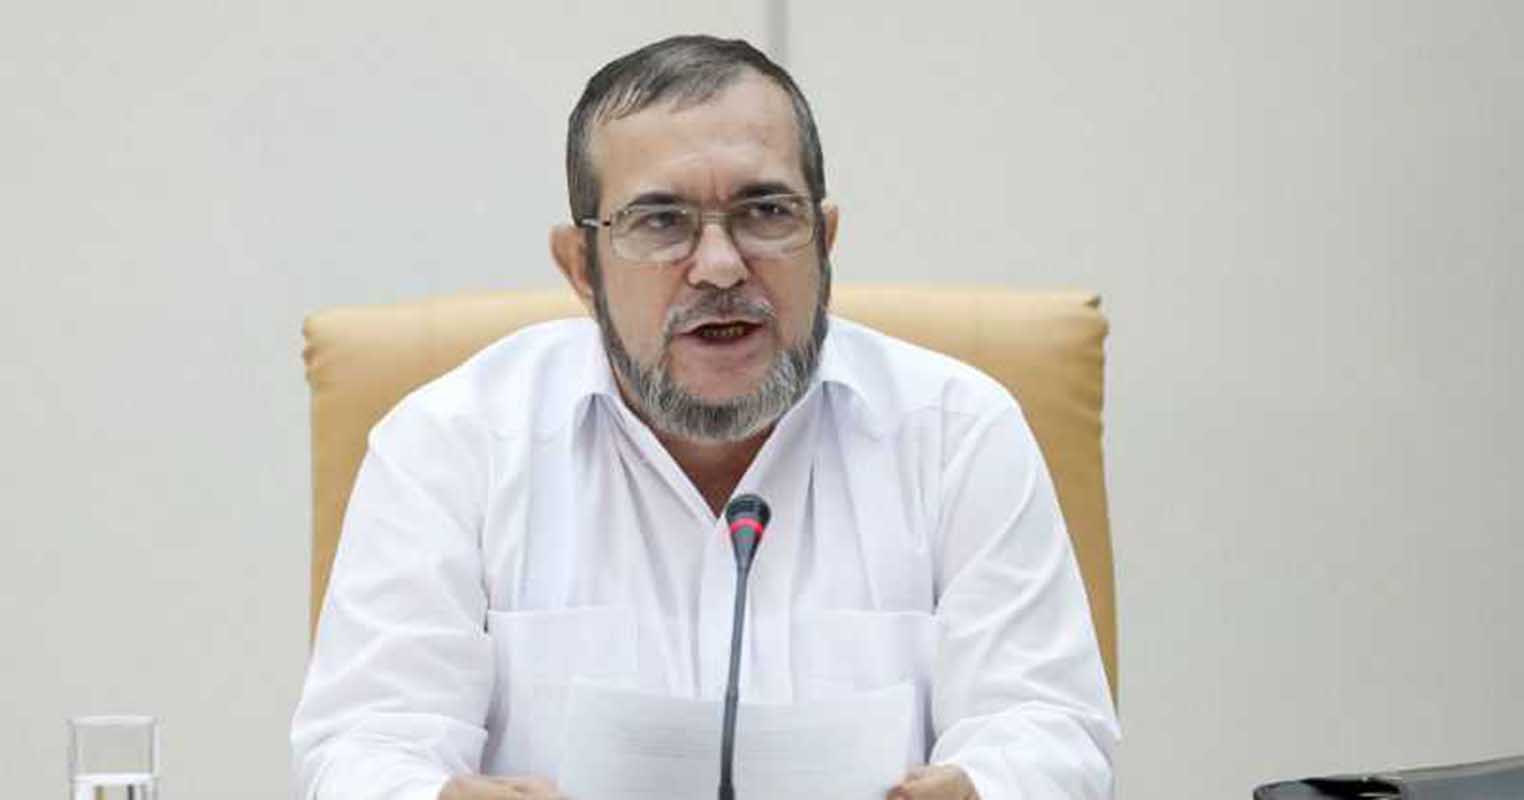 Empeora diagnóstico del líder de la FARC tras sufrir infarto en Colombia